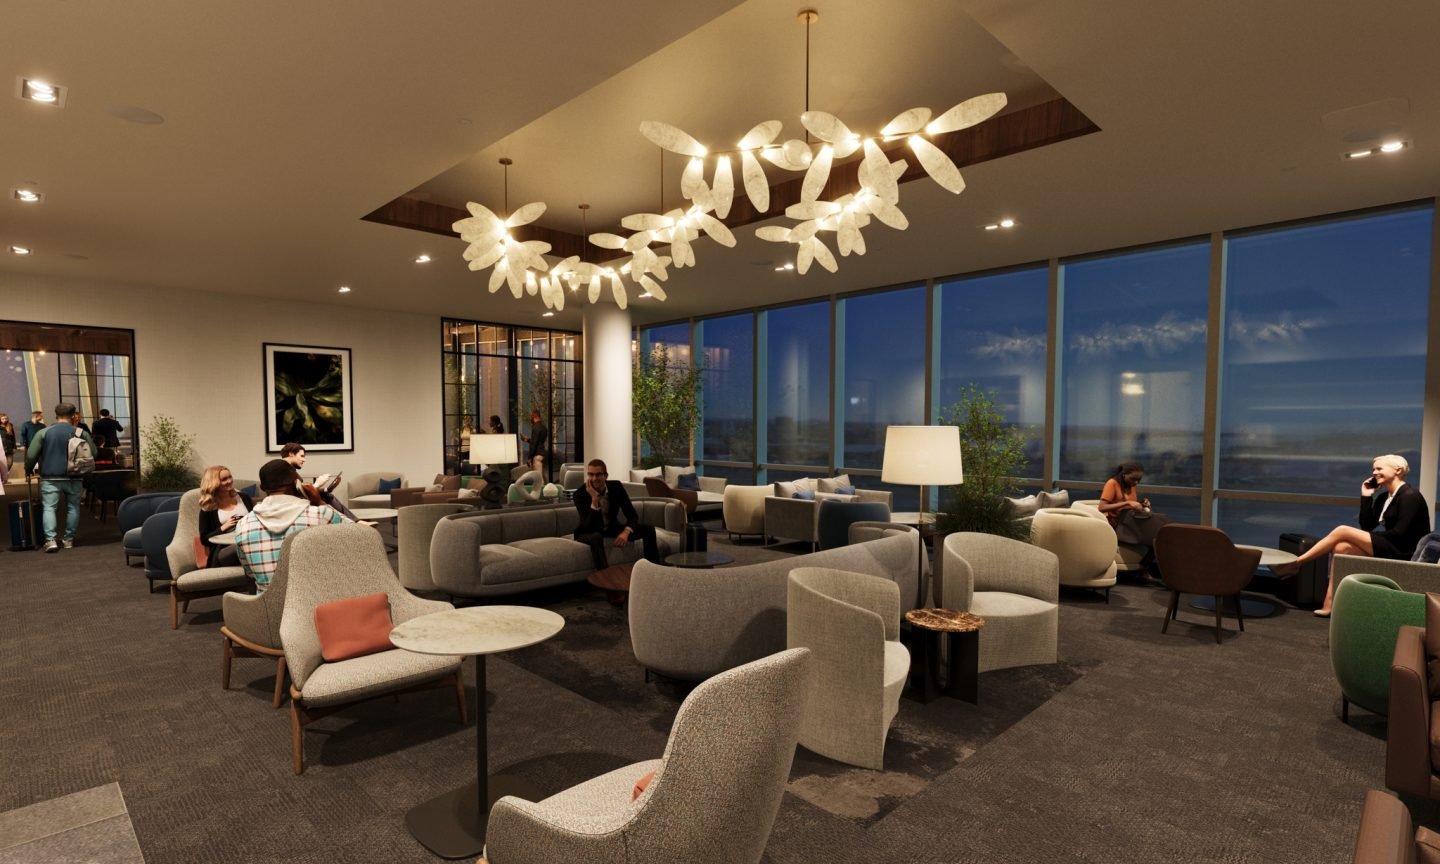 AmEx to Open Centurion Lounge at Newark Airport – NerdWallet